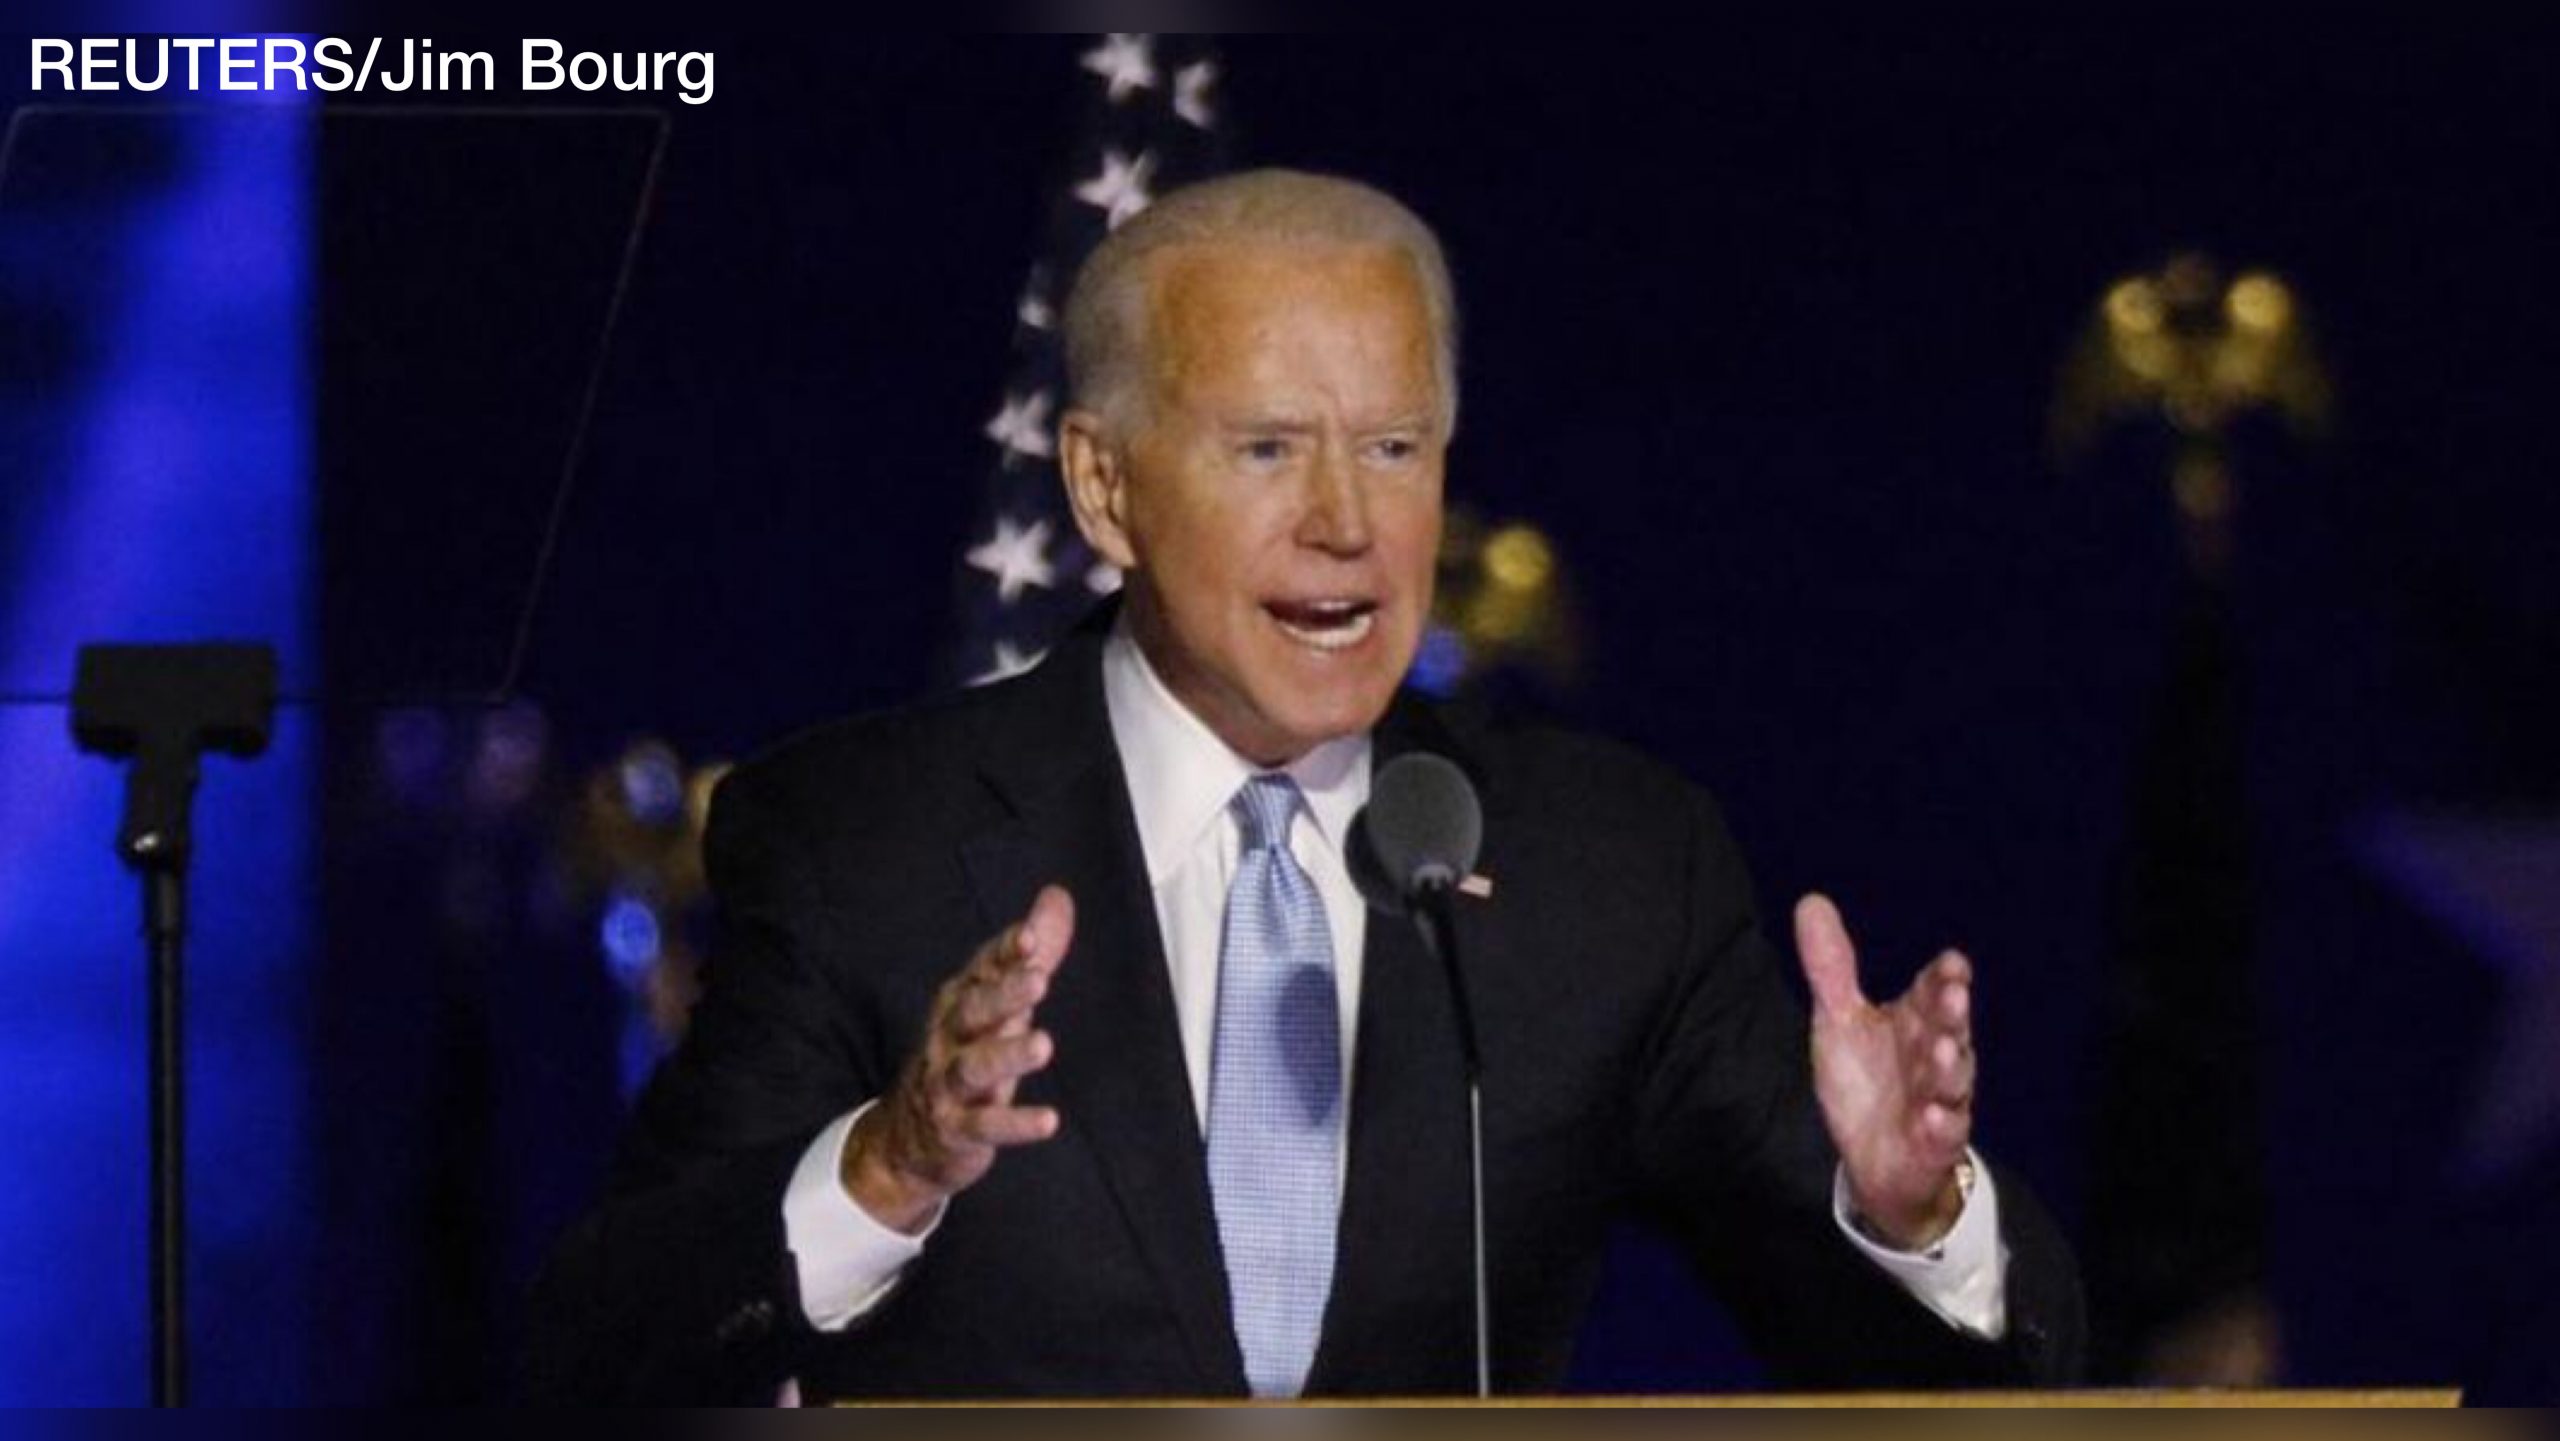 Joe Biden anuncia un equipo para combatir el Covid-19 tras ganar elecciones en EE.UU.